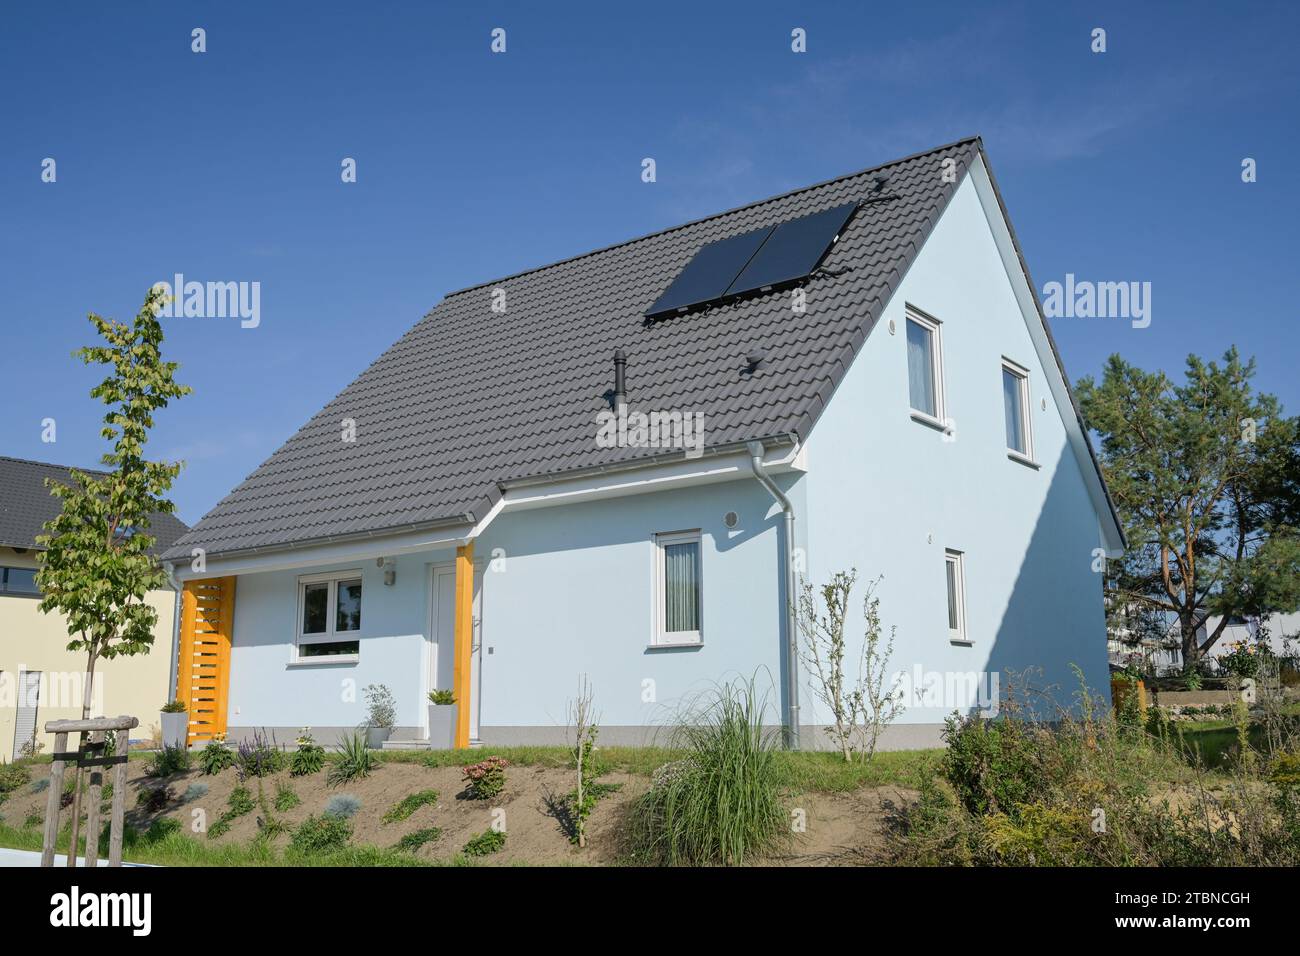 Einfamilienhaus, Neubaugebiet Am Rüggen Ost, Melchow am Rügen, Brandenburg, Deutschland Stock Photo